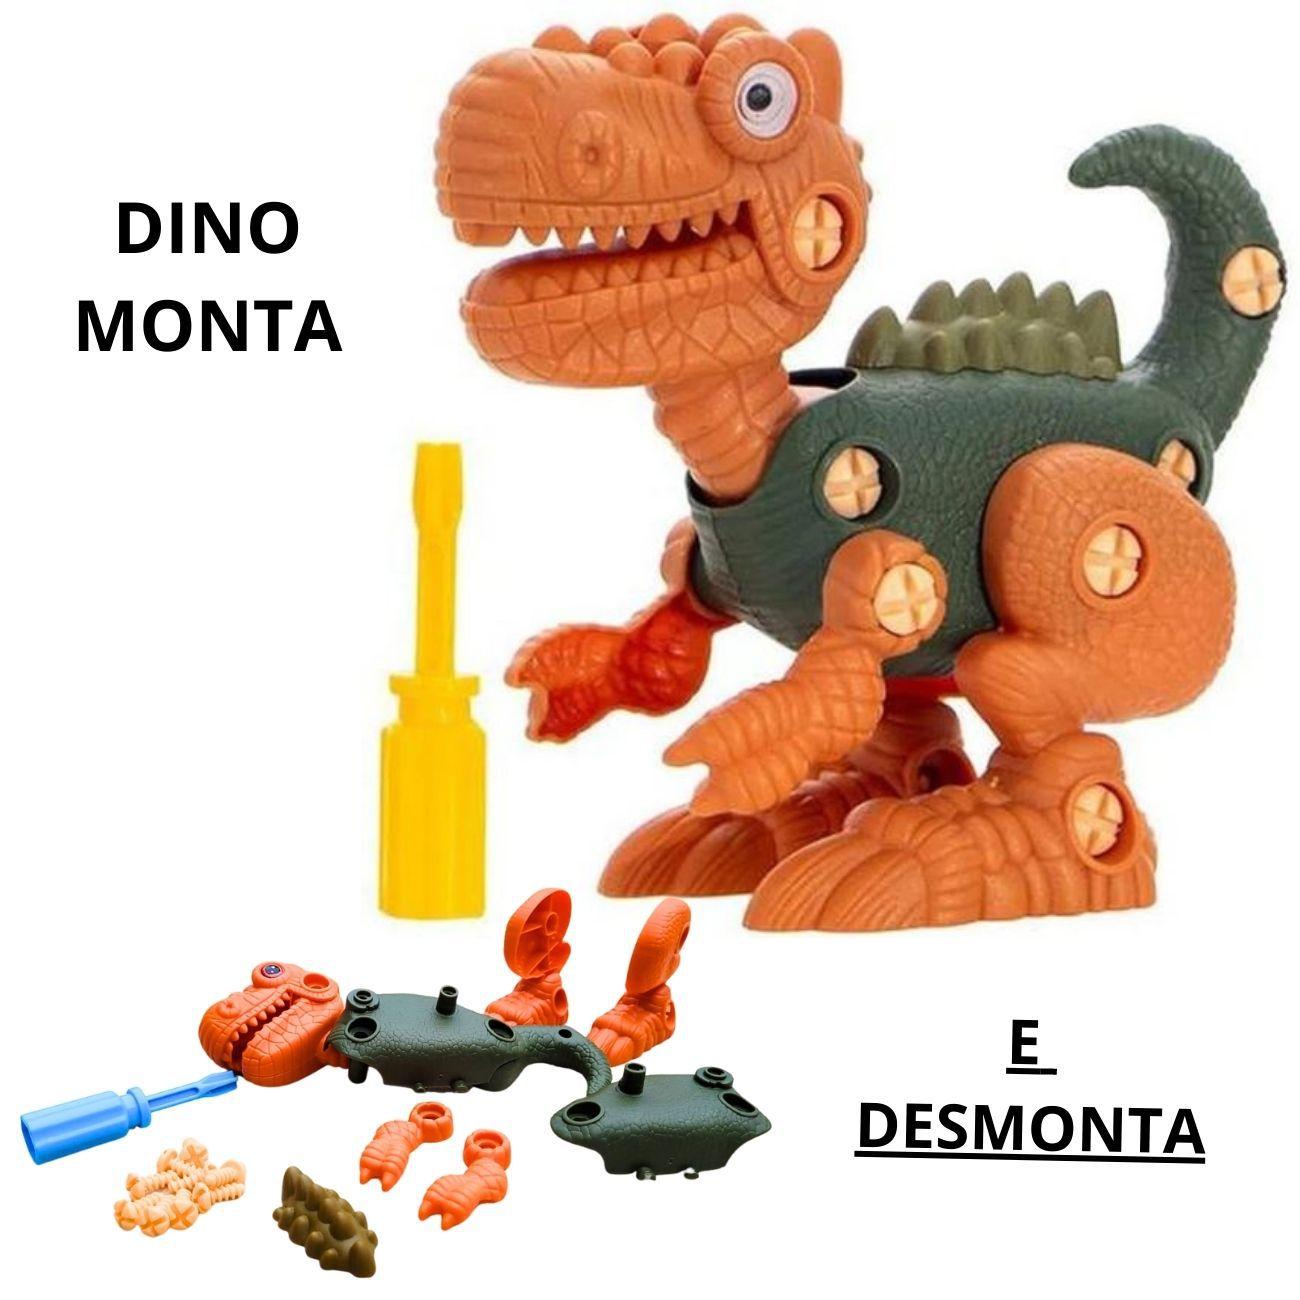 Brinquedo Educativo Dino Monta e Desmonta com Chave ArtBrink